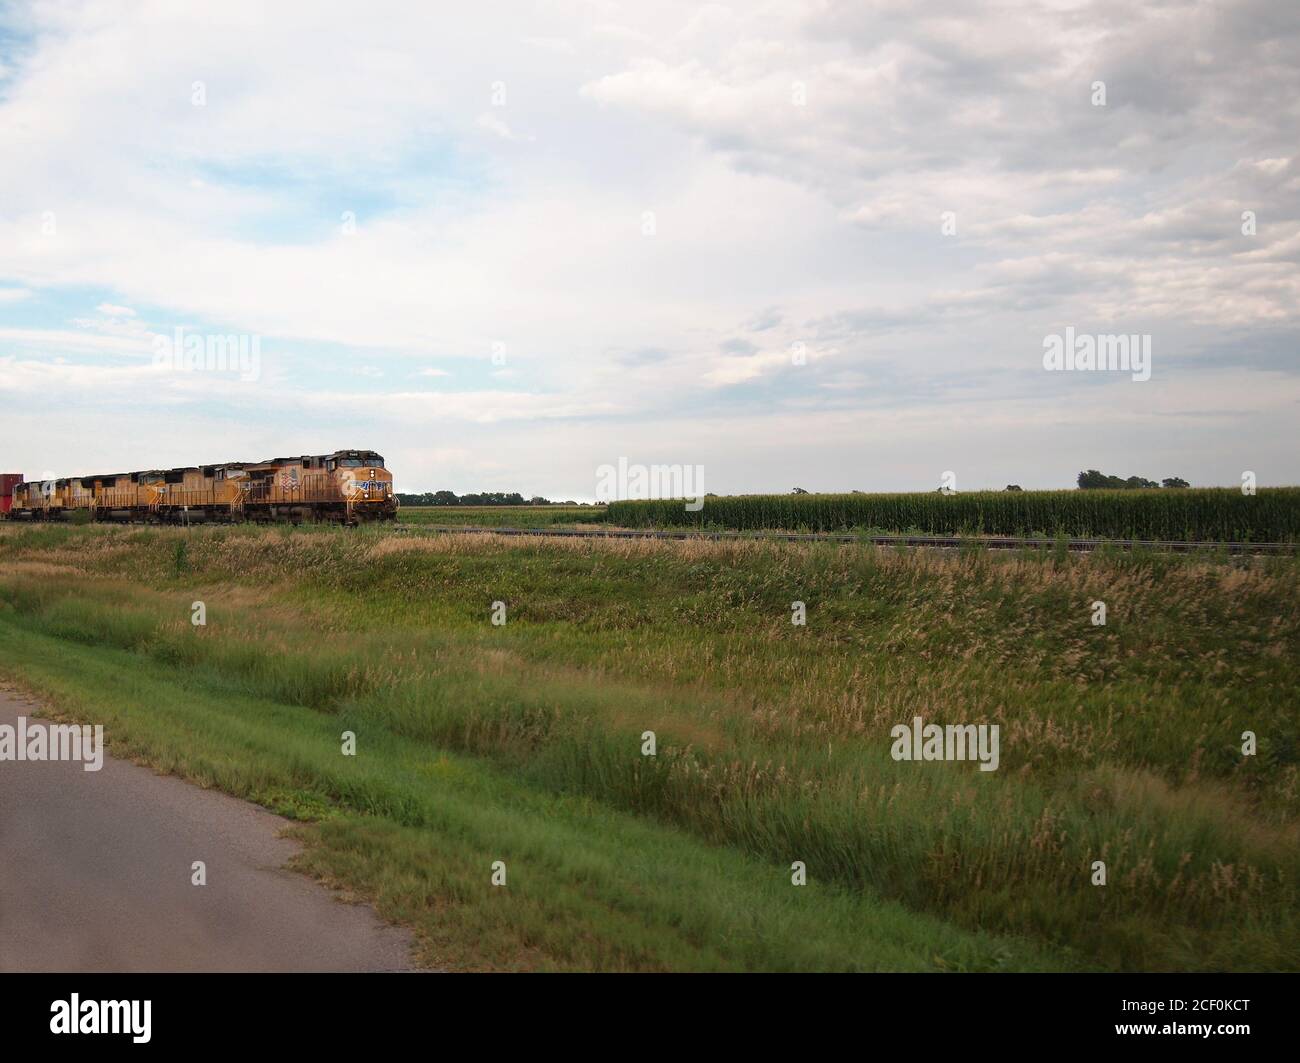 WOOD RIVER, NEBRASKA - 26 JUILLET 2018 : un train de chemin de fer jaune vif de l'Union Pacific s'approche d'un champ de maïs lorsqu'il traverse les terres agricoles rurales du Nebraska Banque D'Images